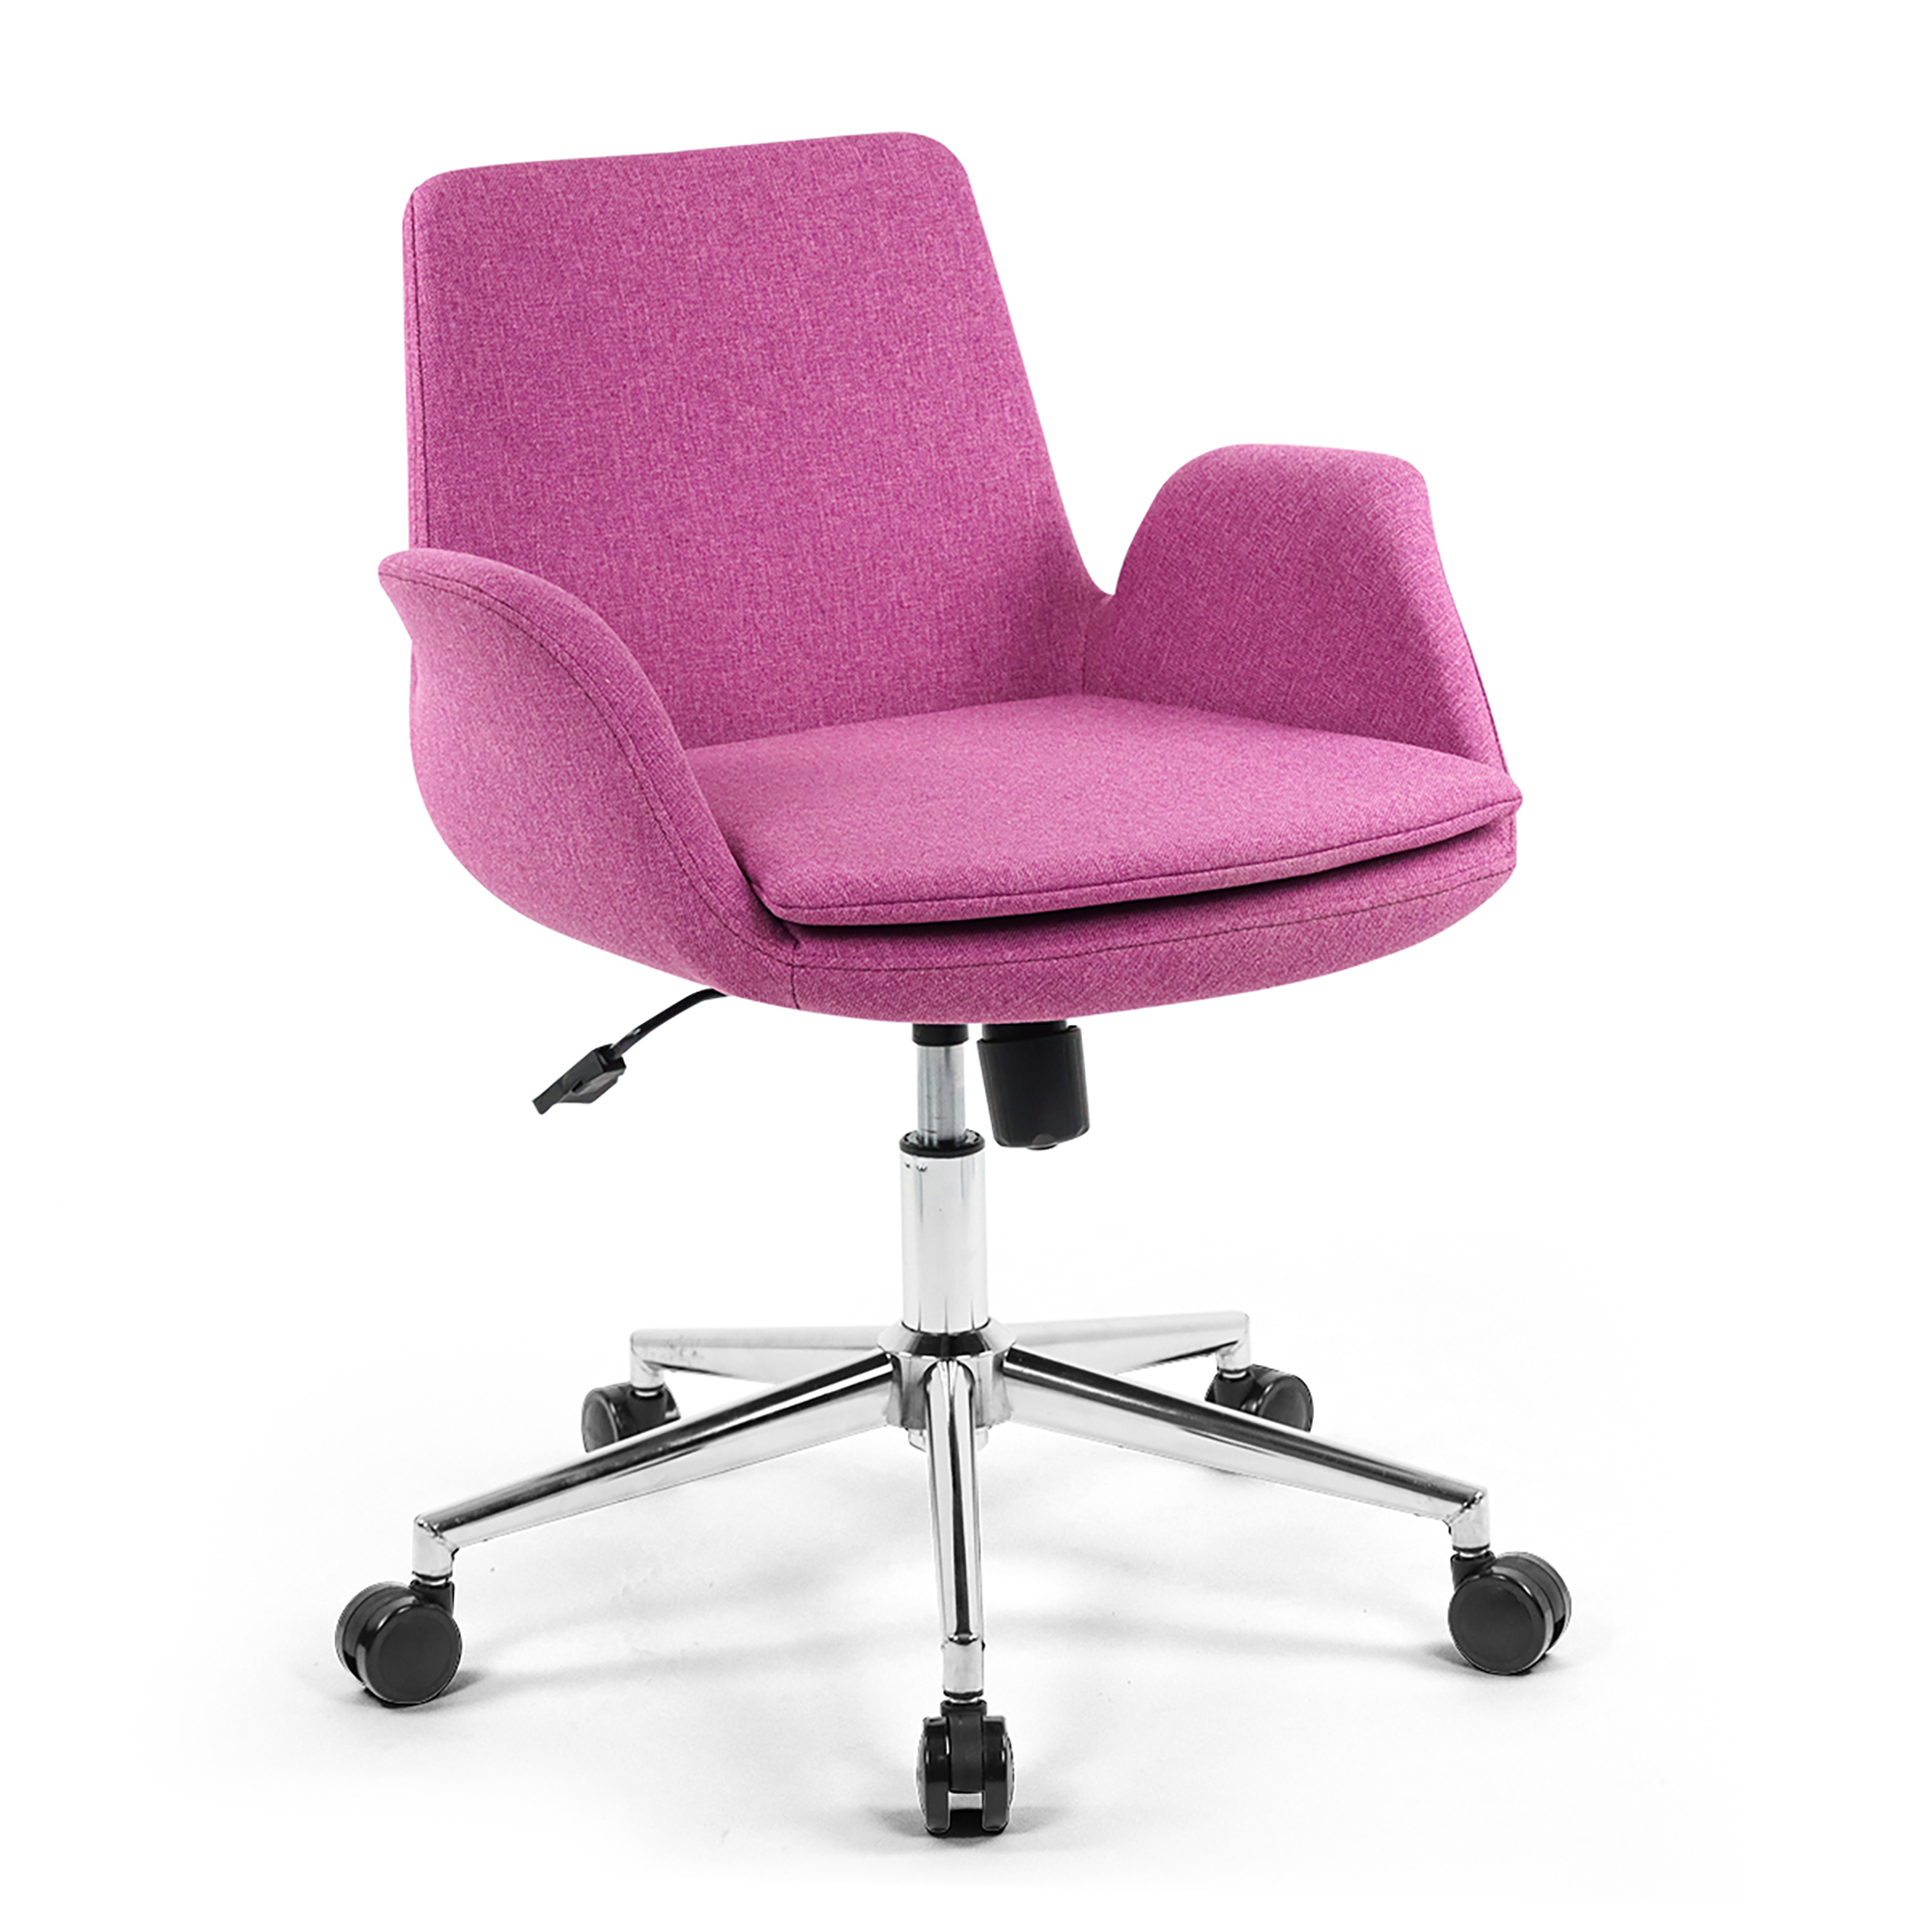 Çalışma Sandalyesi | Seduna Ofis Koltukları | Maxim Up Bilgisayar Koltuğu